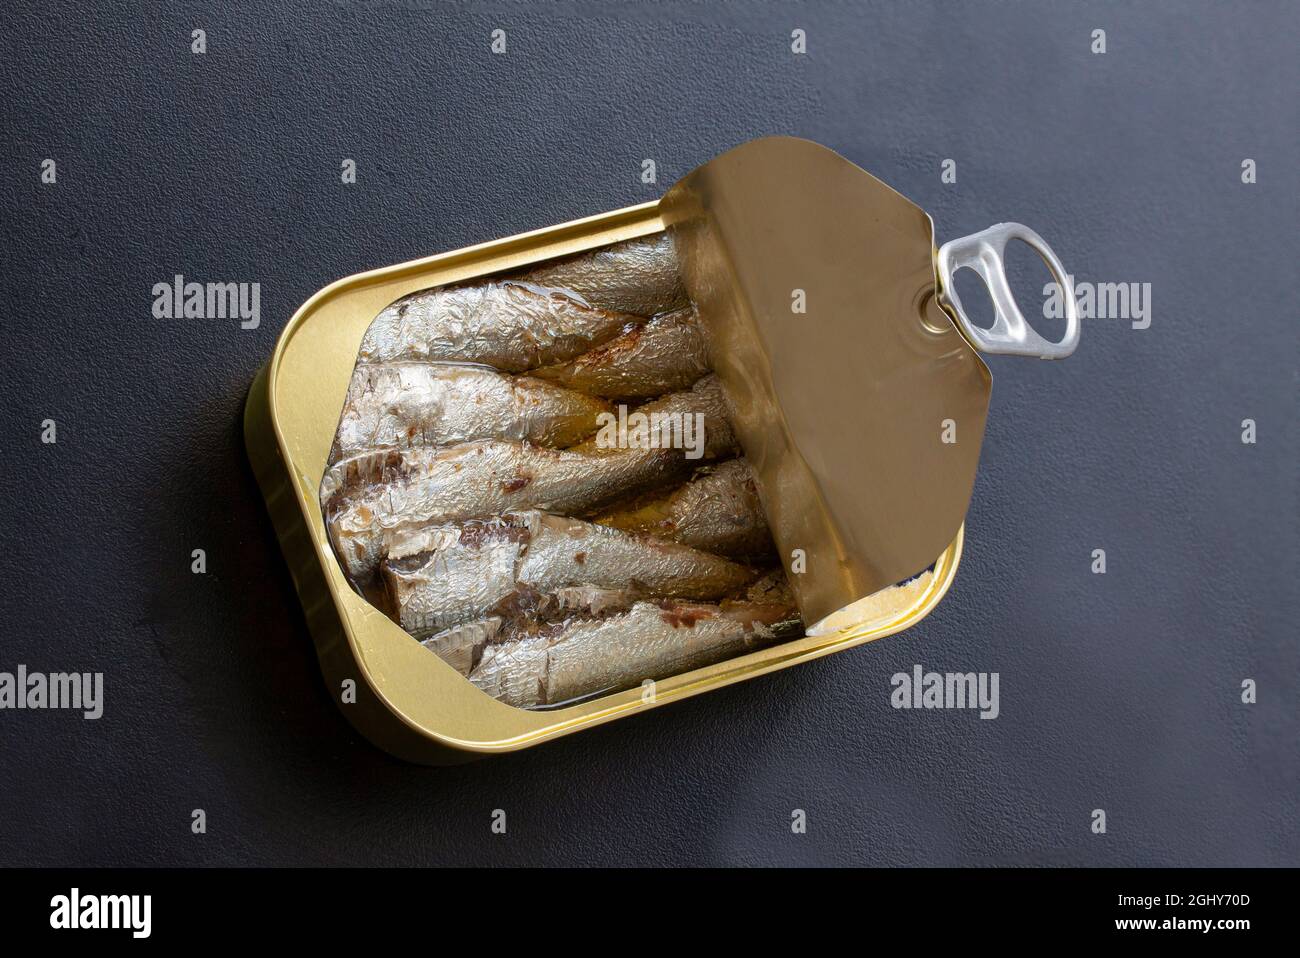 Ouvrir boîte de sardines avec couvercle ouvert et anneau tirer sur fond noir. Photo vue de dessus. Banque D'Images